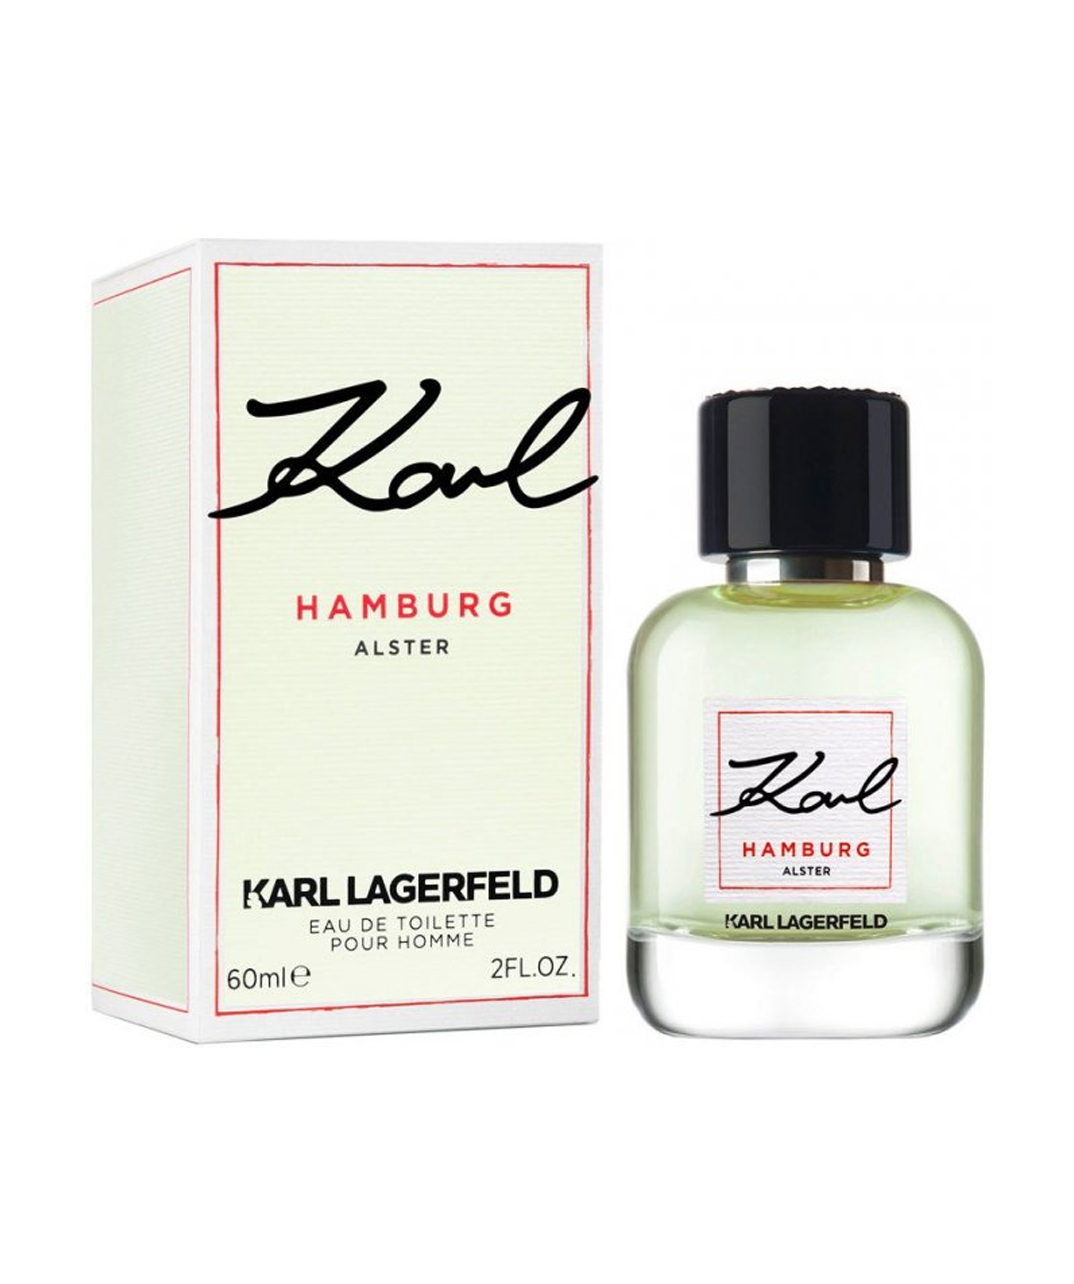 Perfume «Karl Lagerfeld» Hamburg Alster, for men, 60 ml